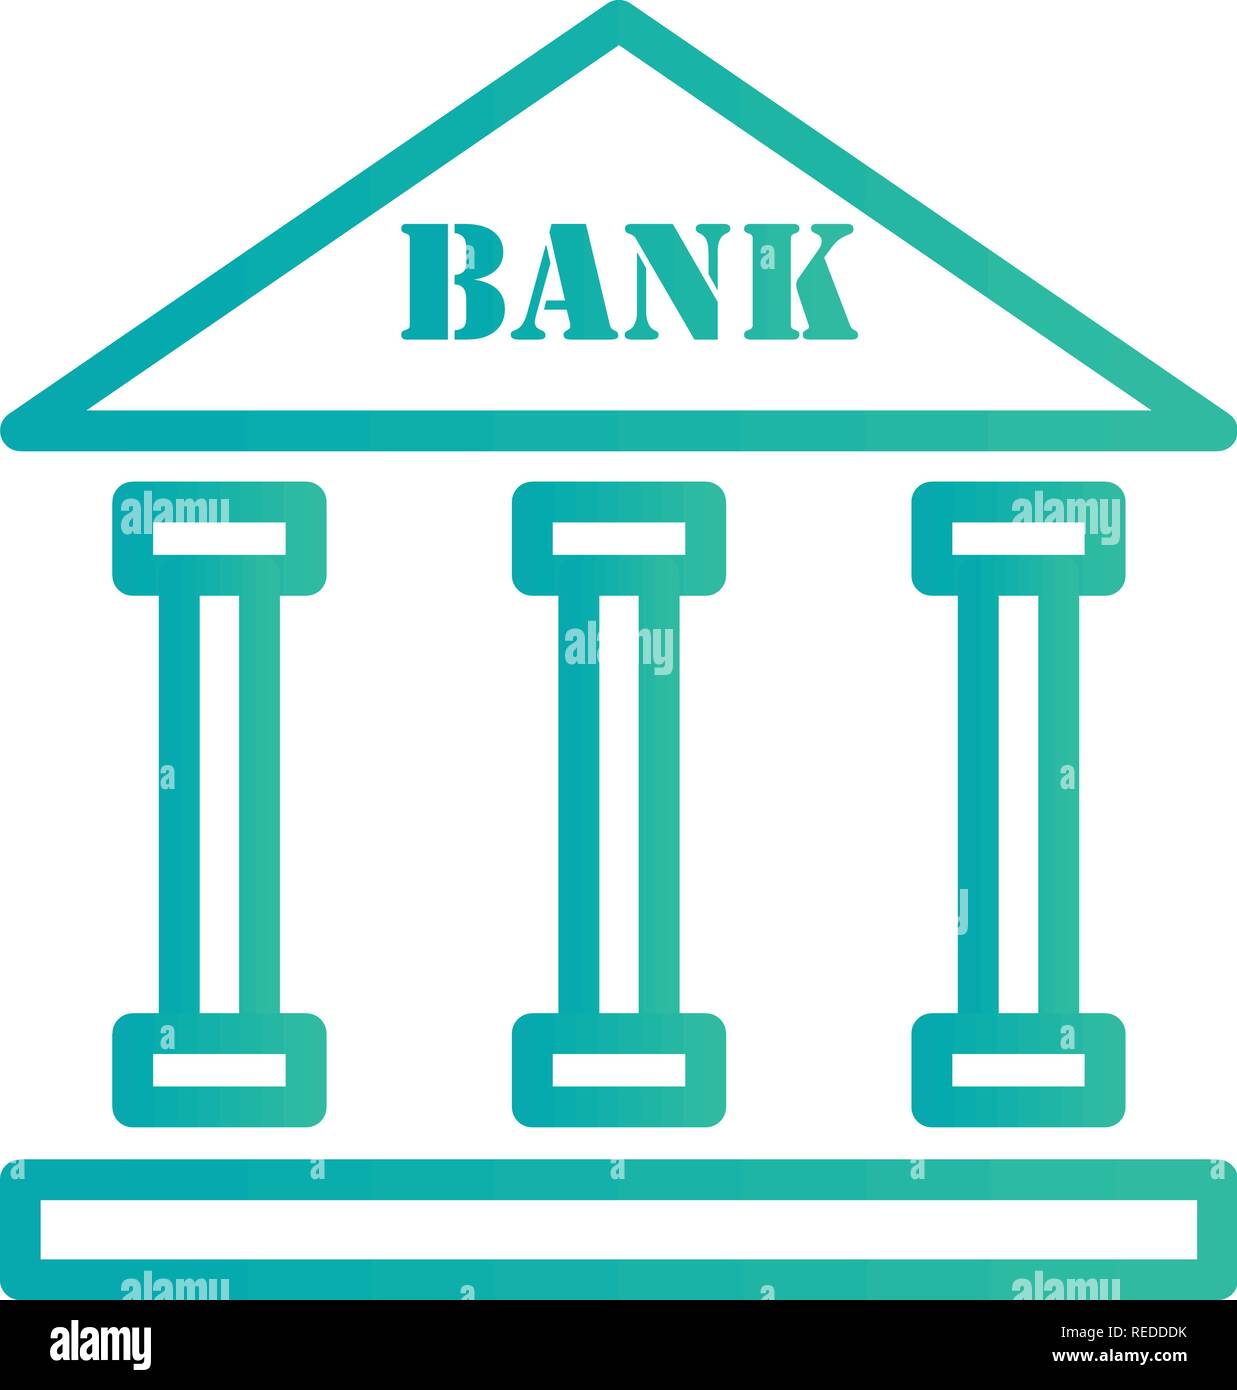 Bank Vektor Icon Zeichen Symbol Vektor Illustration für den privaten und  gewerblichen Gebrauch... Reinigen Sie trendige Symbol Stock-Vektorgrafik -  Alamy